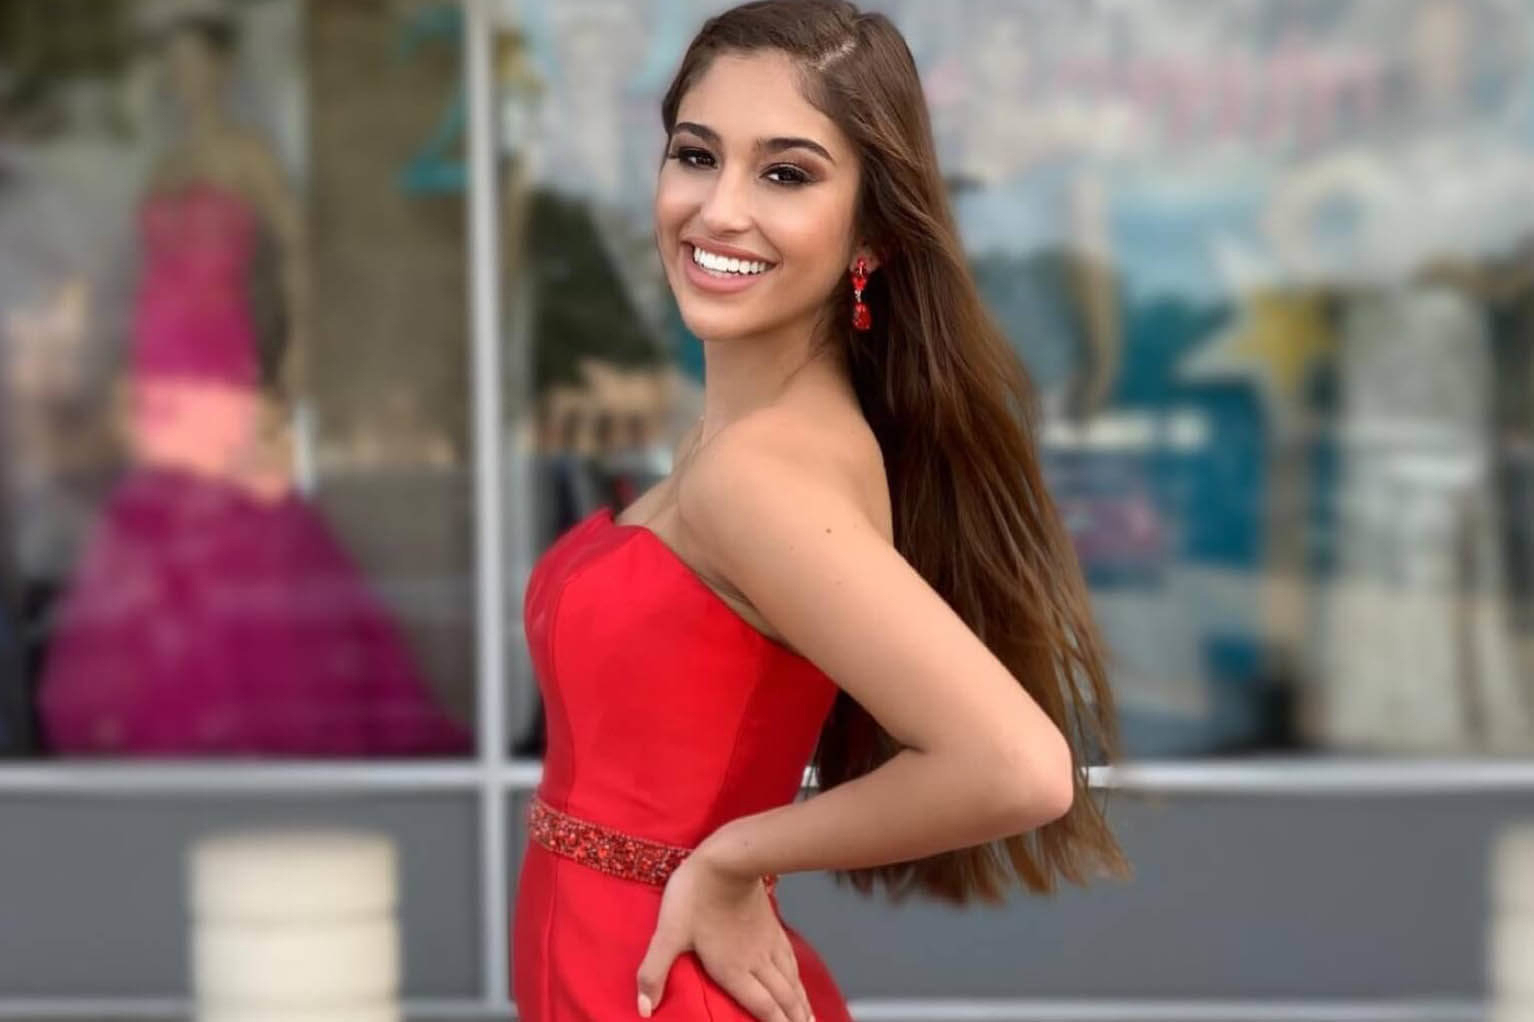 Model wearing a red dress